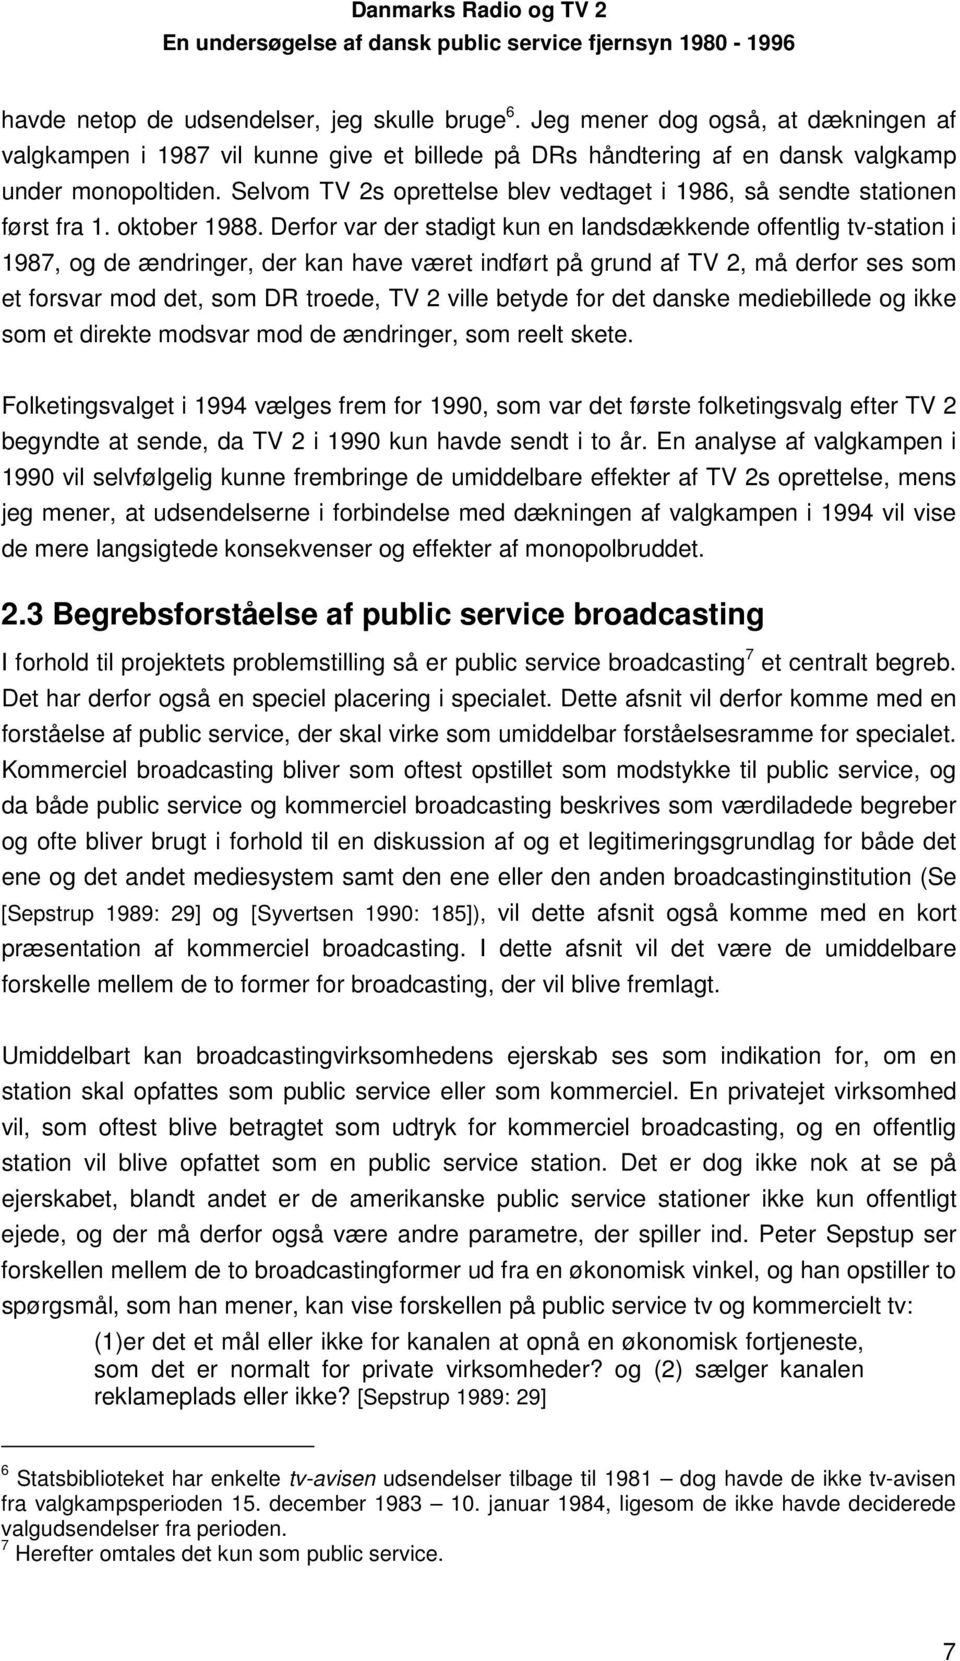 Derfor var der stadigt kun en landsdækkende offentlig tv-station i 1987, og de ændringer, der kan have været indført på grund af TV 2, må derfor ses som et forsvar mod det, som DR troede, TV 2 ville